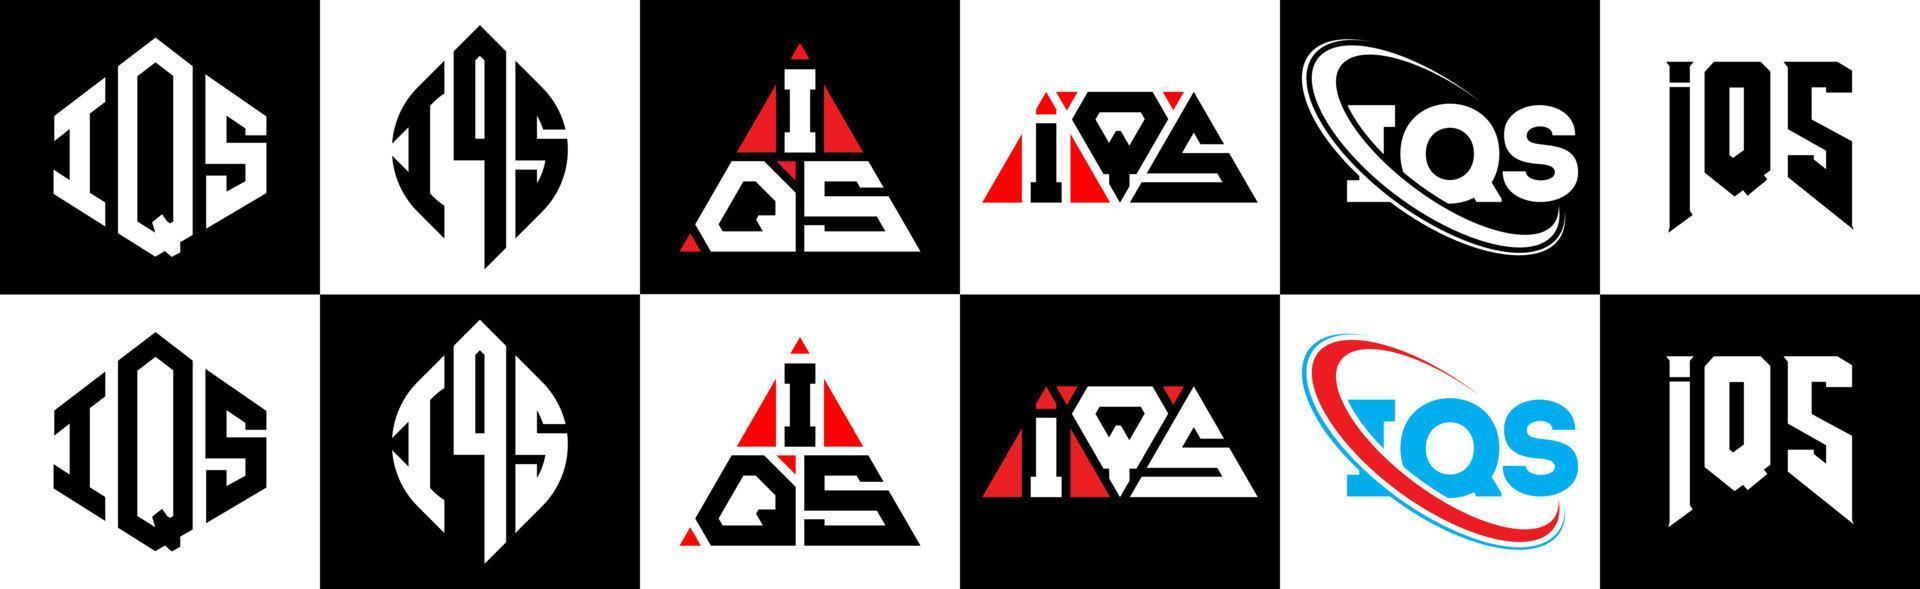 iqs-Buchstaben-Logo-Design in sechs Stilen. iqs Polygon, Kreis, Dreieck, Sechseck, flacher und einfacher Stil mit schwarz-weißem Buchstabenlogo in einer Zeichenfläche. iqs minimalistisches und klassisches Logo vektor